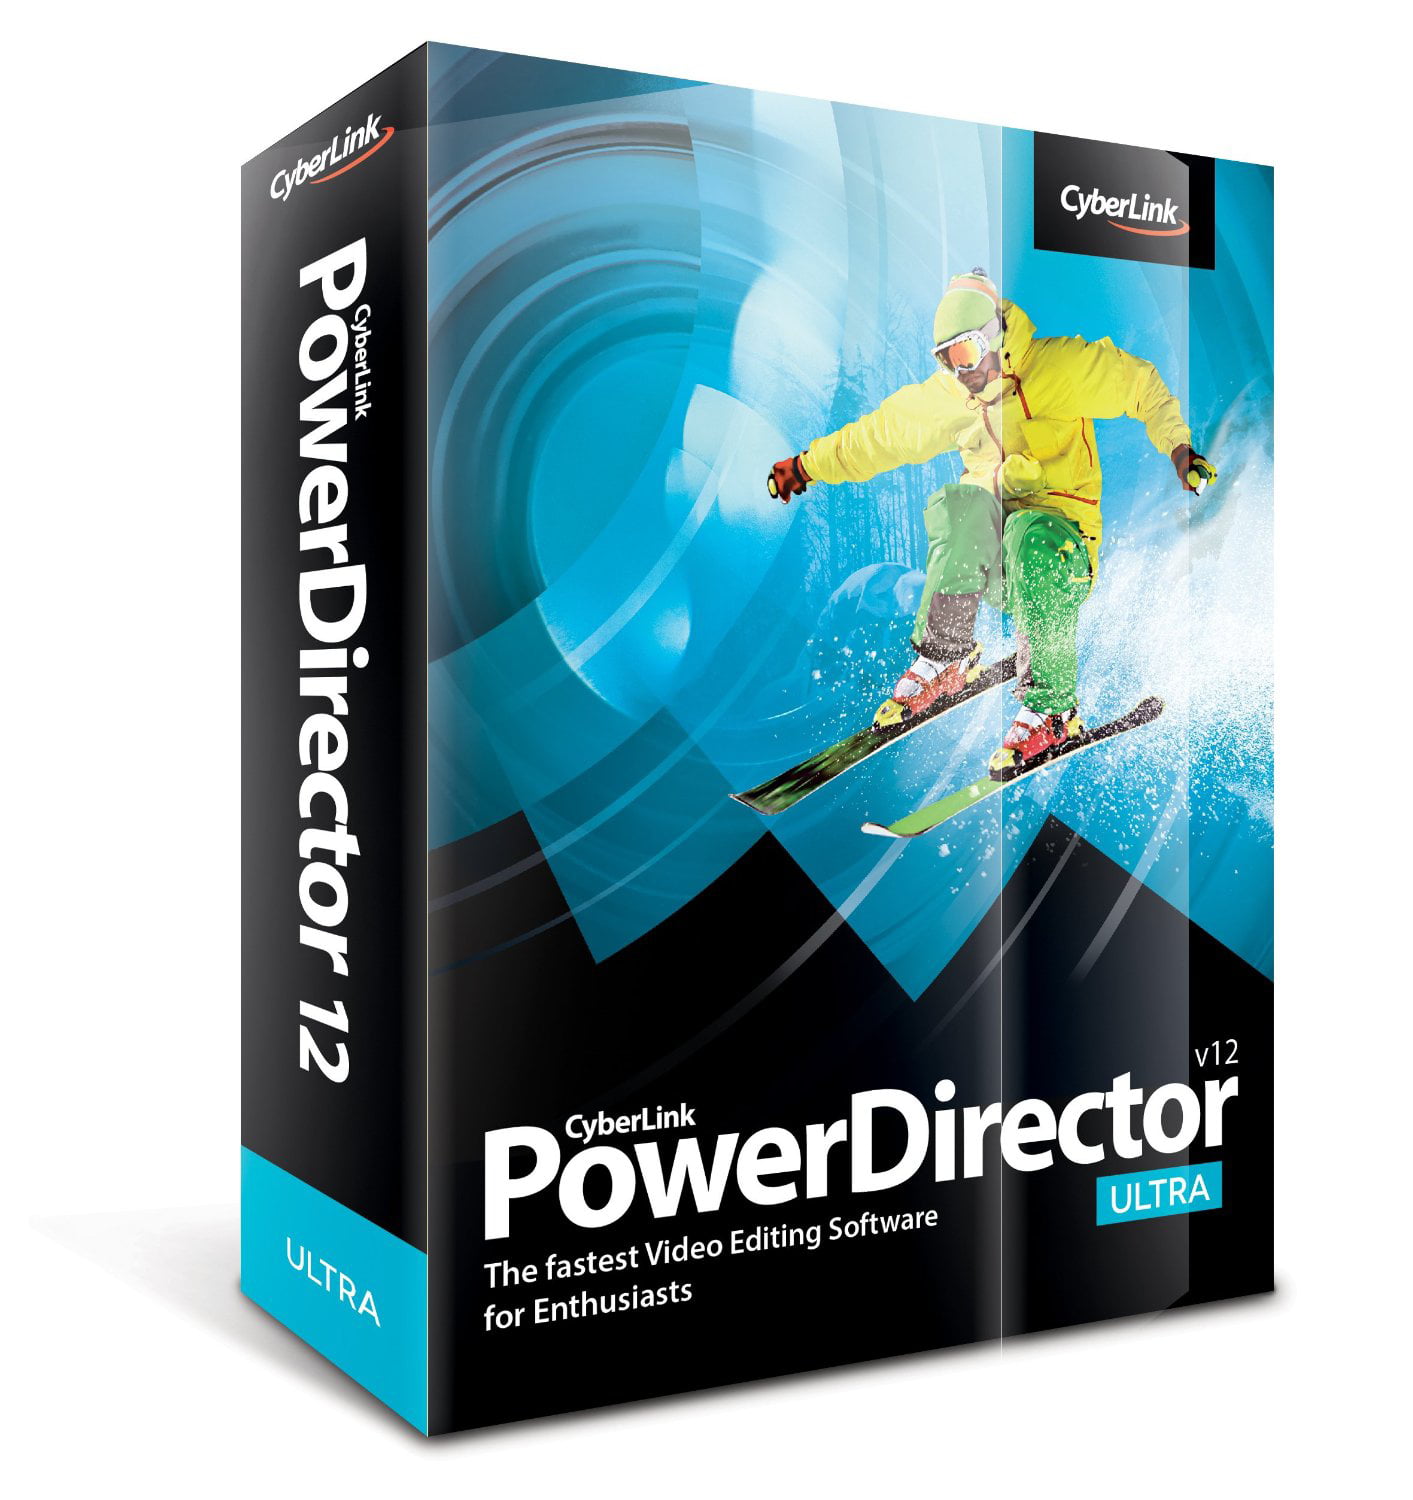 powerdirector 365 crack download